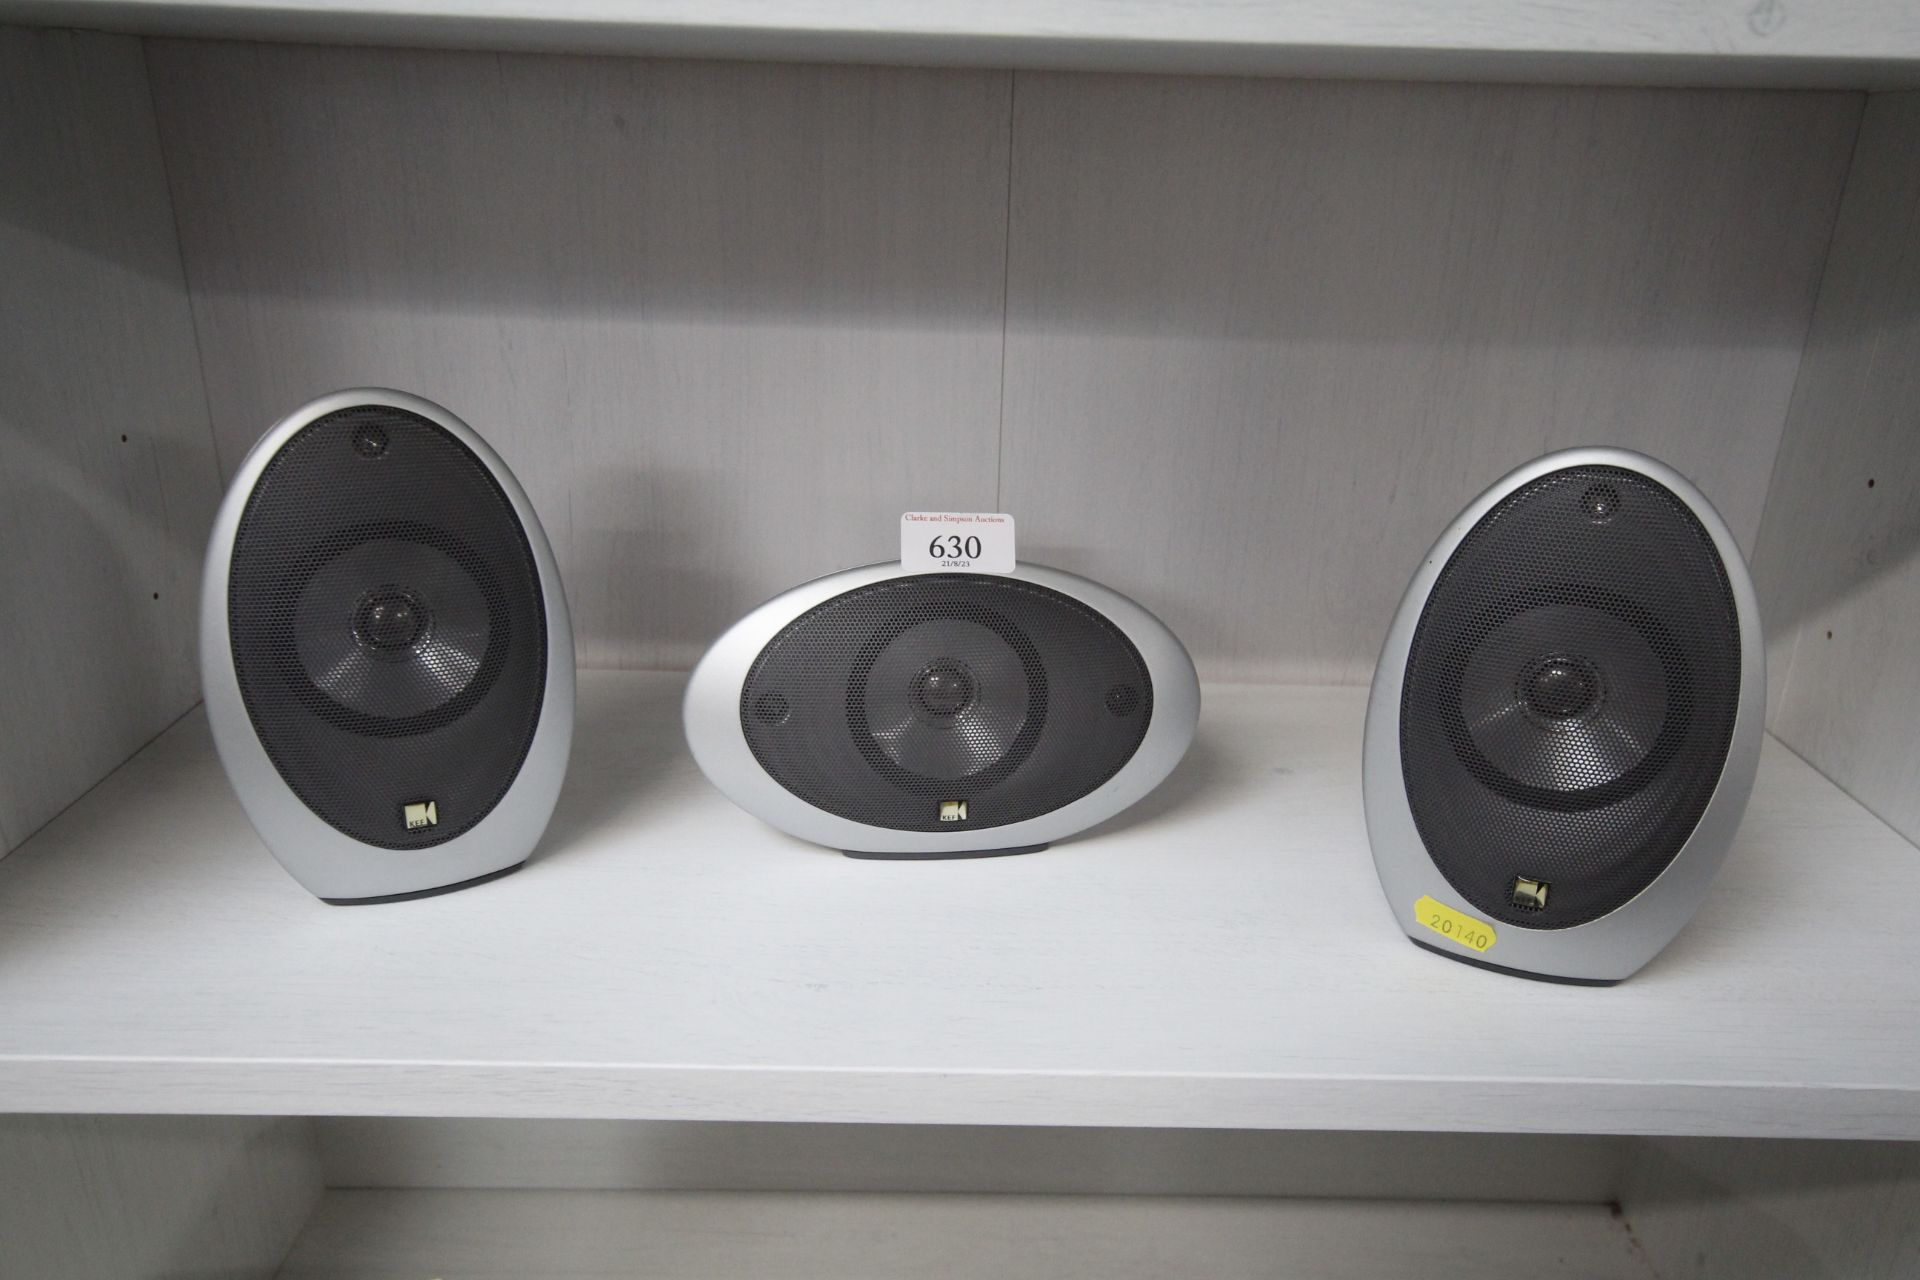 Three Kef speakers